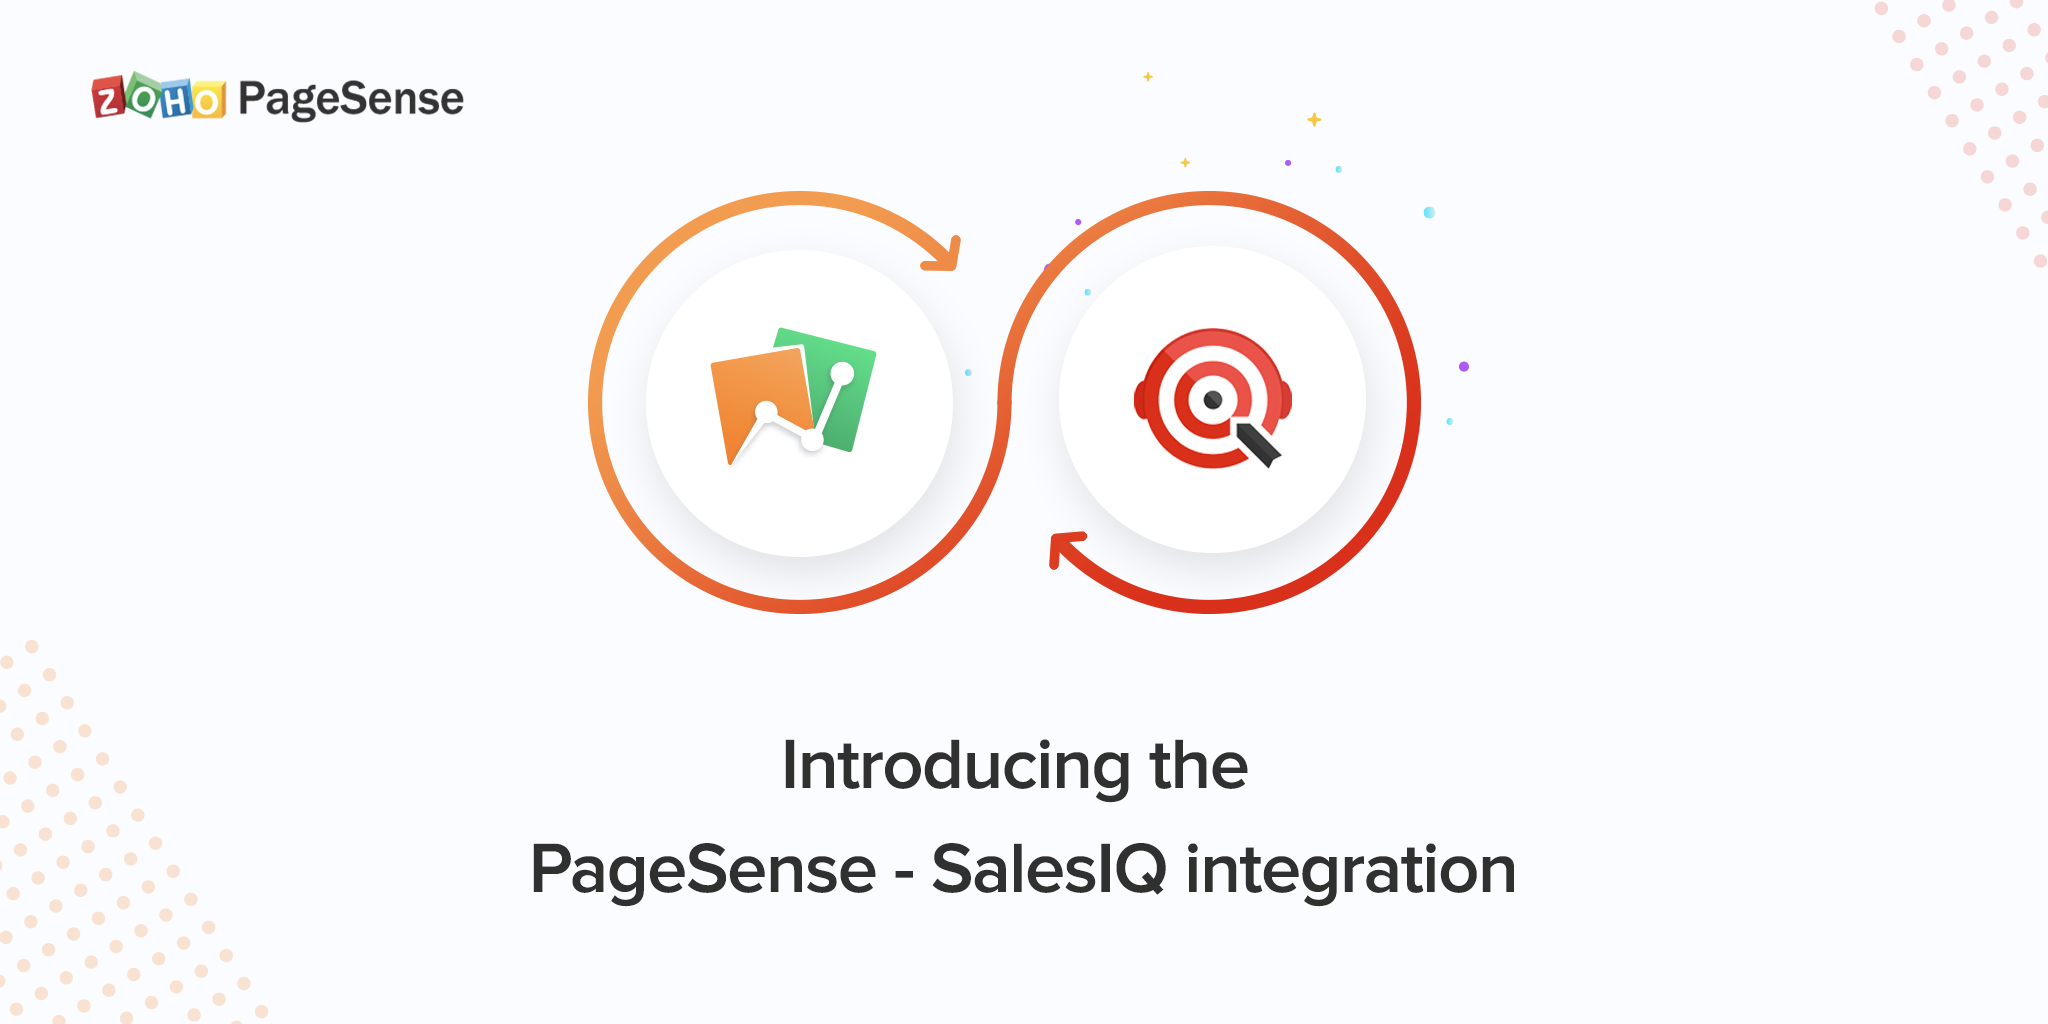 Launching PageSense and SalesIQ integration